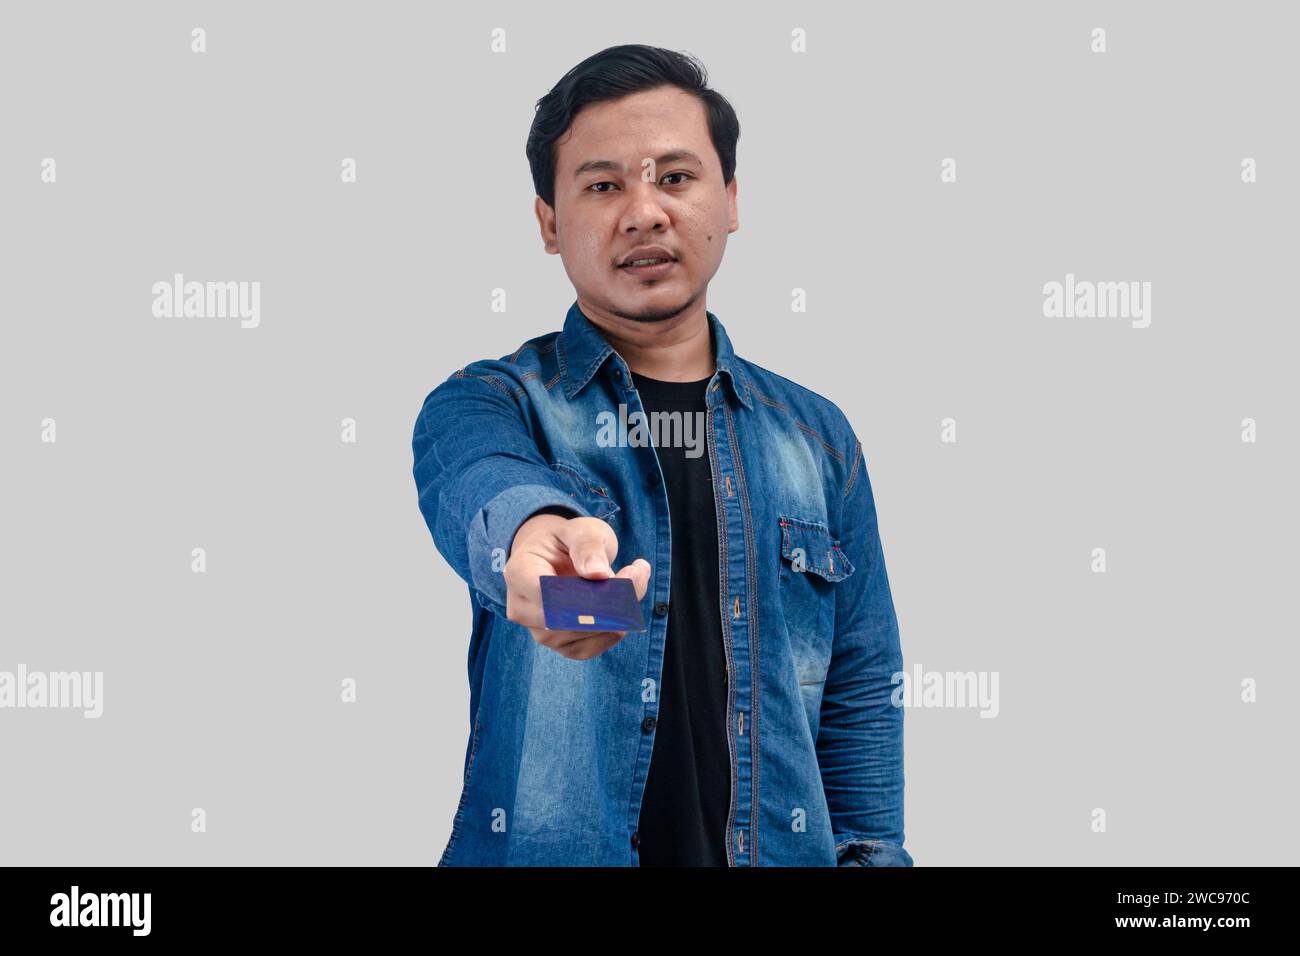 Ein junger asiatischer Mann zeigt seine Kreditkarte auf einem isolierten Hintergrund Stockfoto